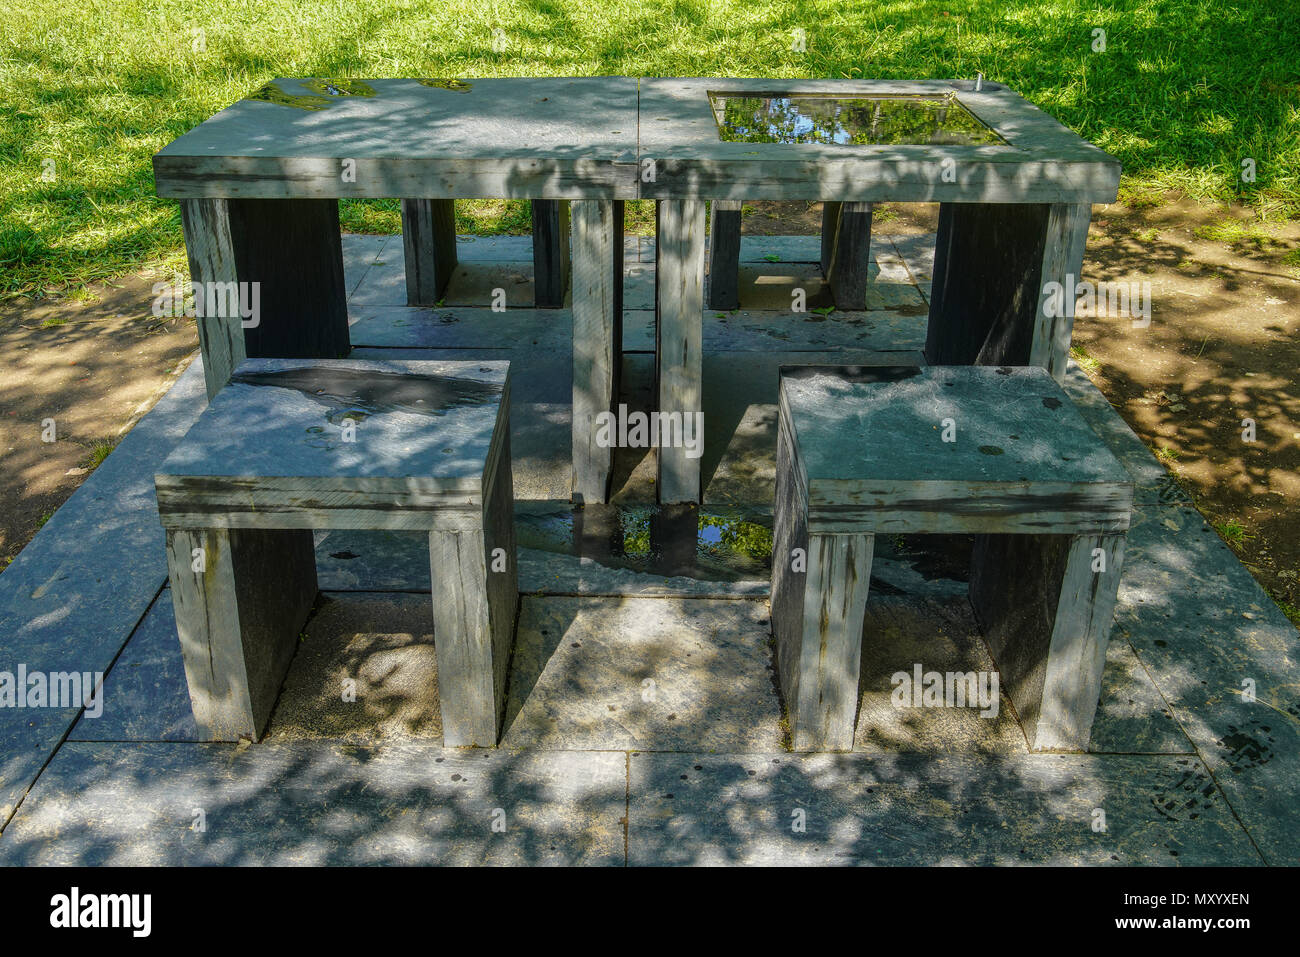 Nuova città da Maria Nordman, tavolo con quattro sedili individuali, con ombra offerta dagli alberi circostanti., Parco di Serralves, Porto, Portogallo Foto Stock